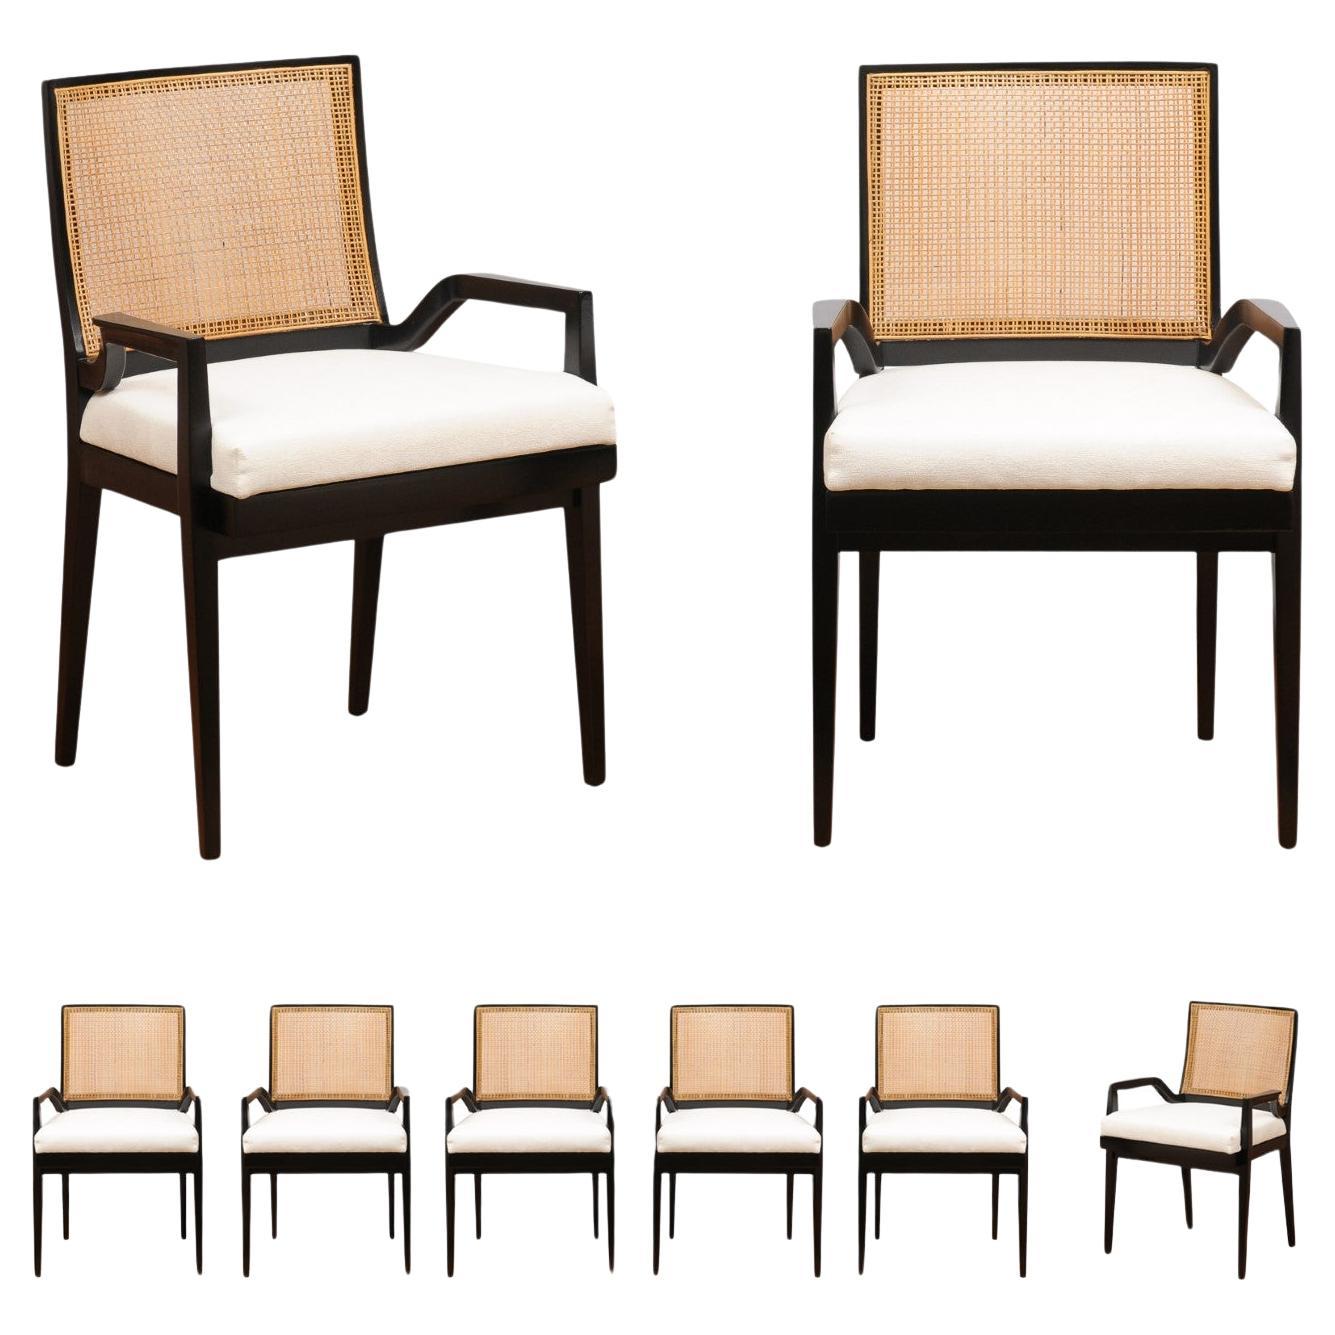 ALL ARMS Ensemble de 8 chaises de salle à manger en cannage laqué noir par Michael Taylor, vers 1960